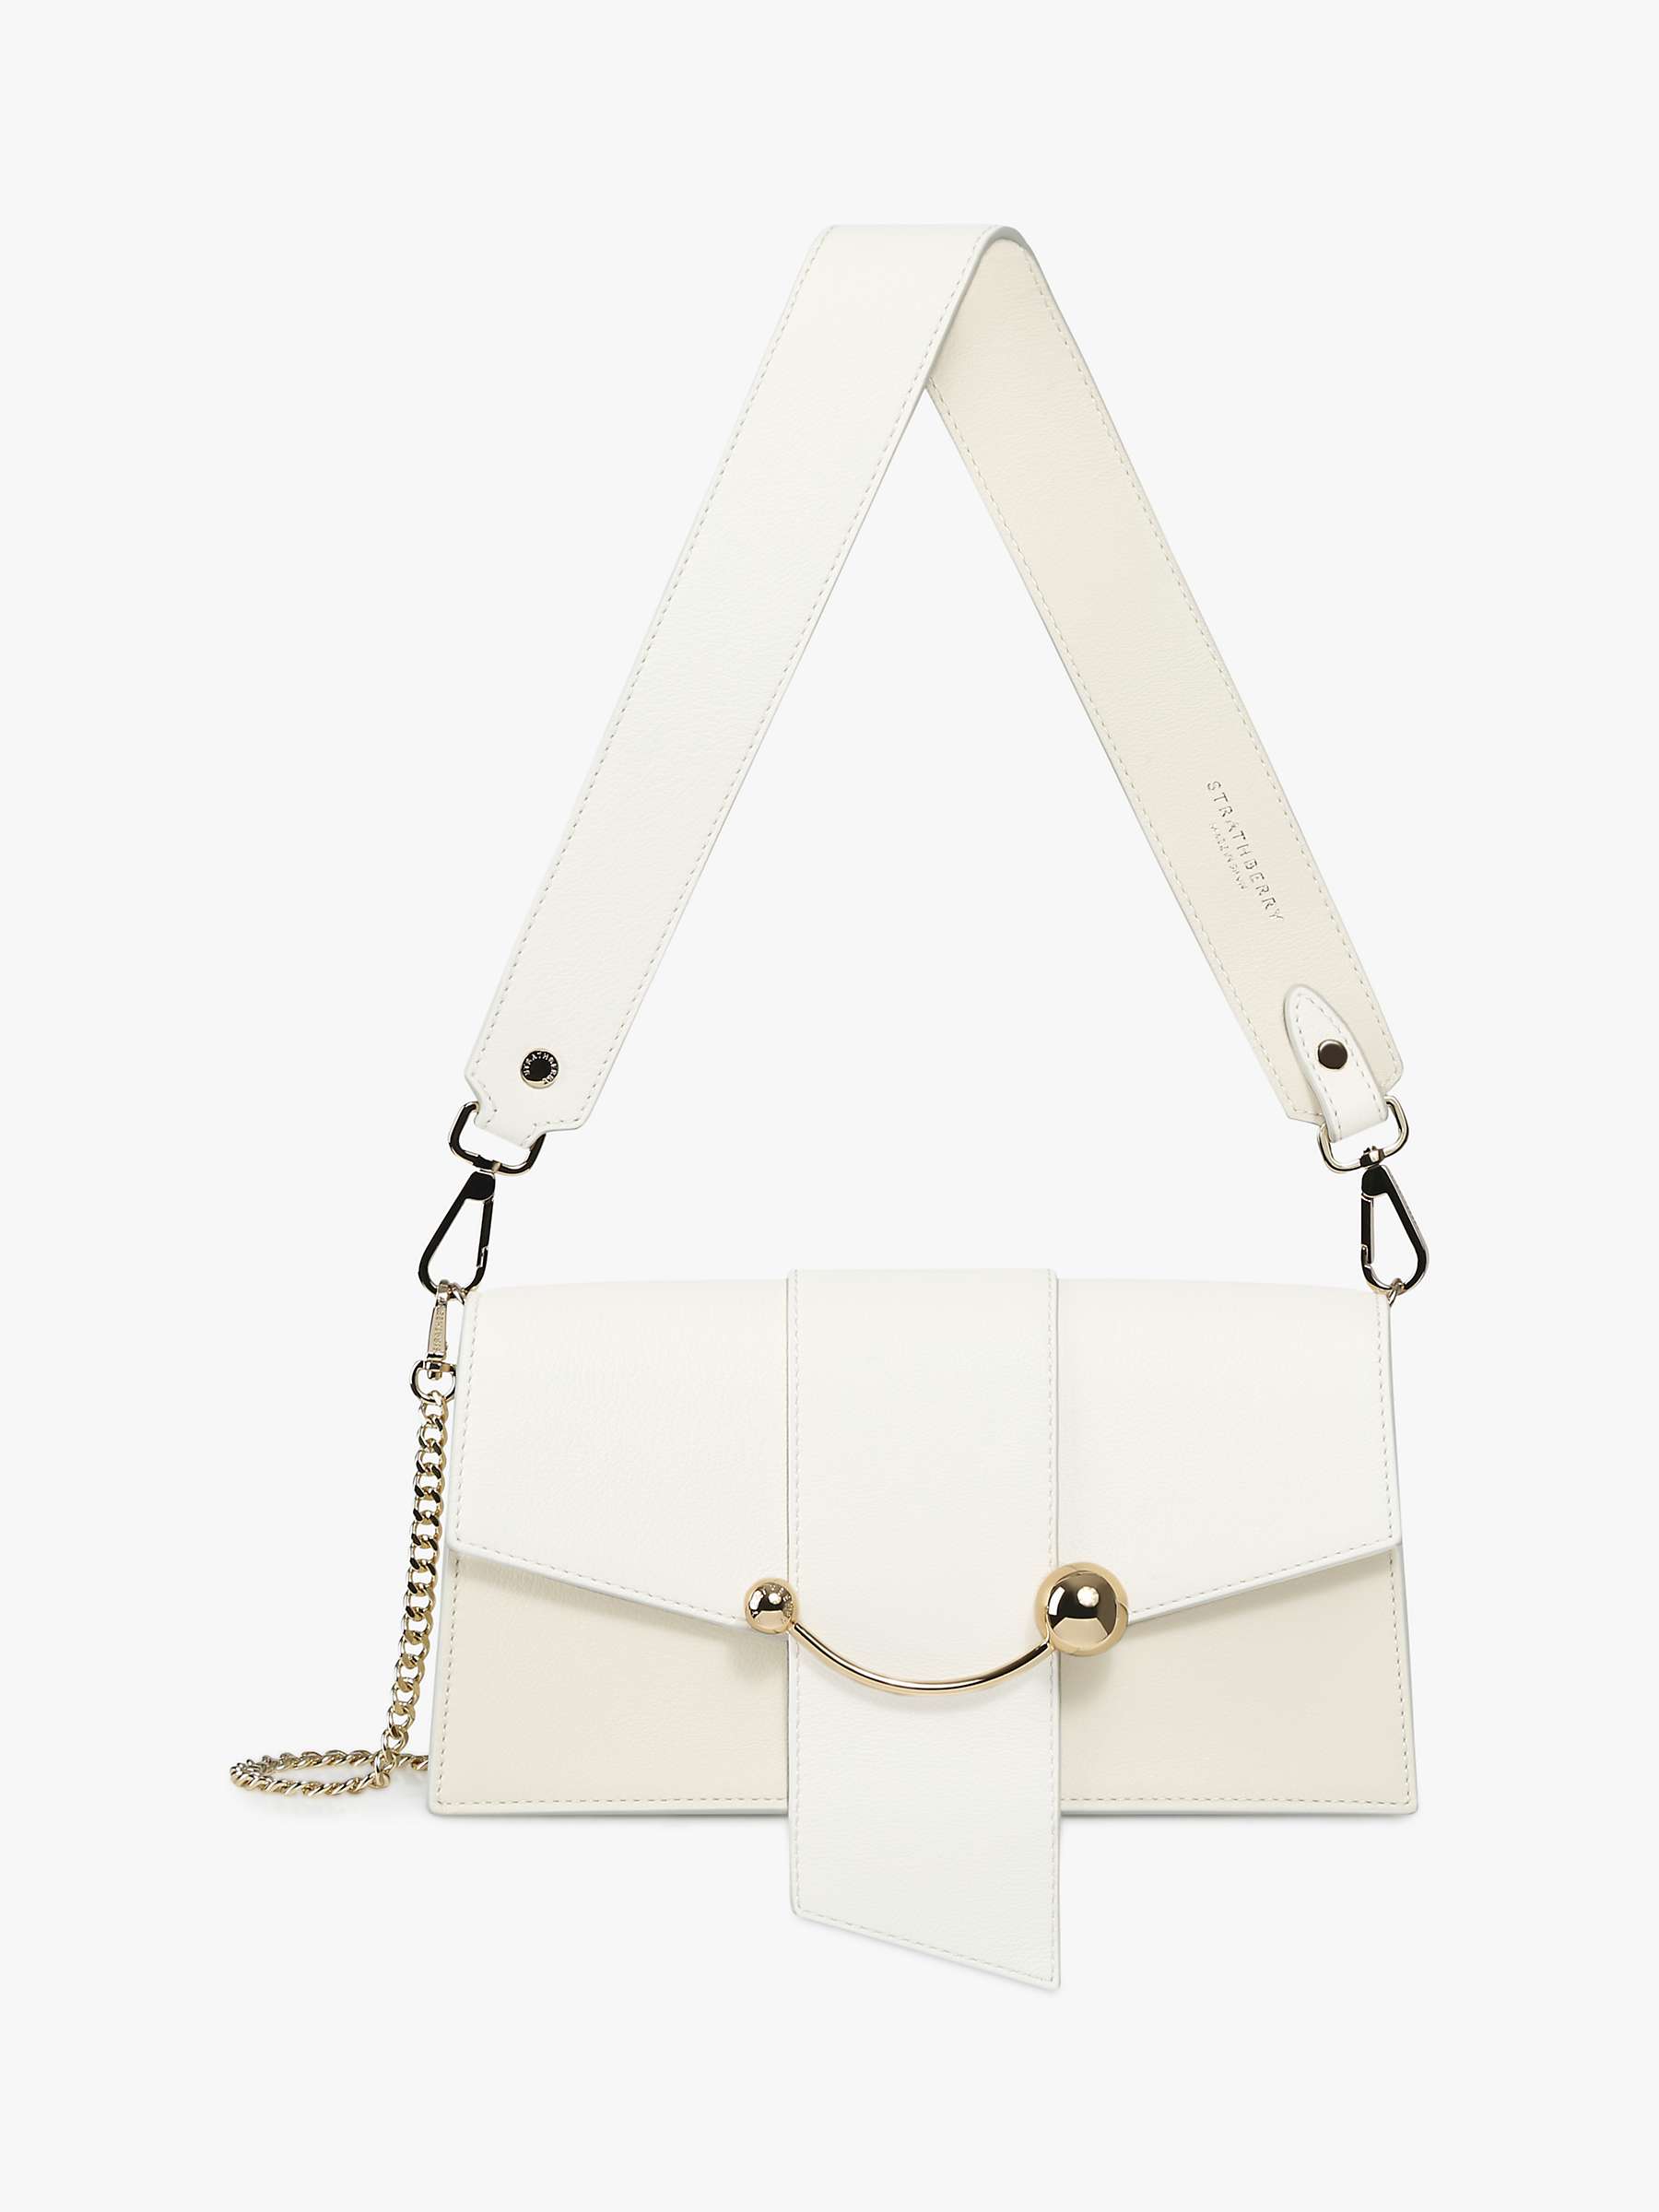 Buy Strathberry Mini Crescent Leather Shoulder Bag Online at johnlewis.com